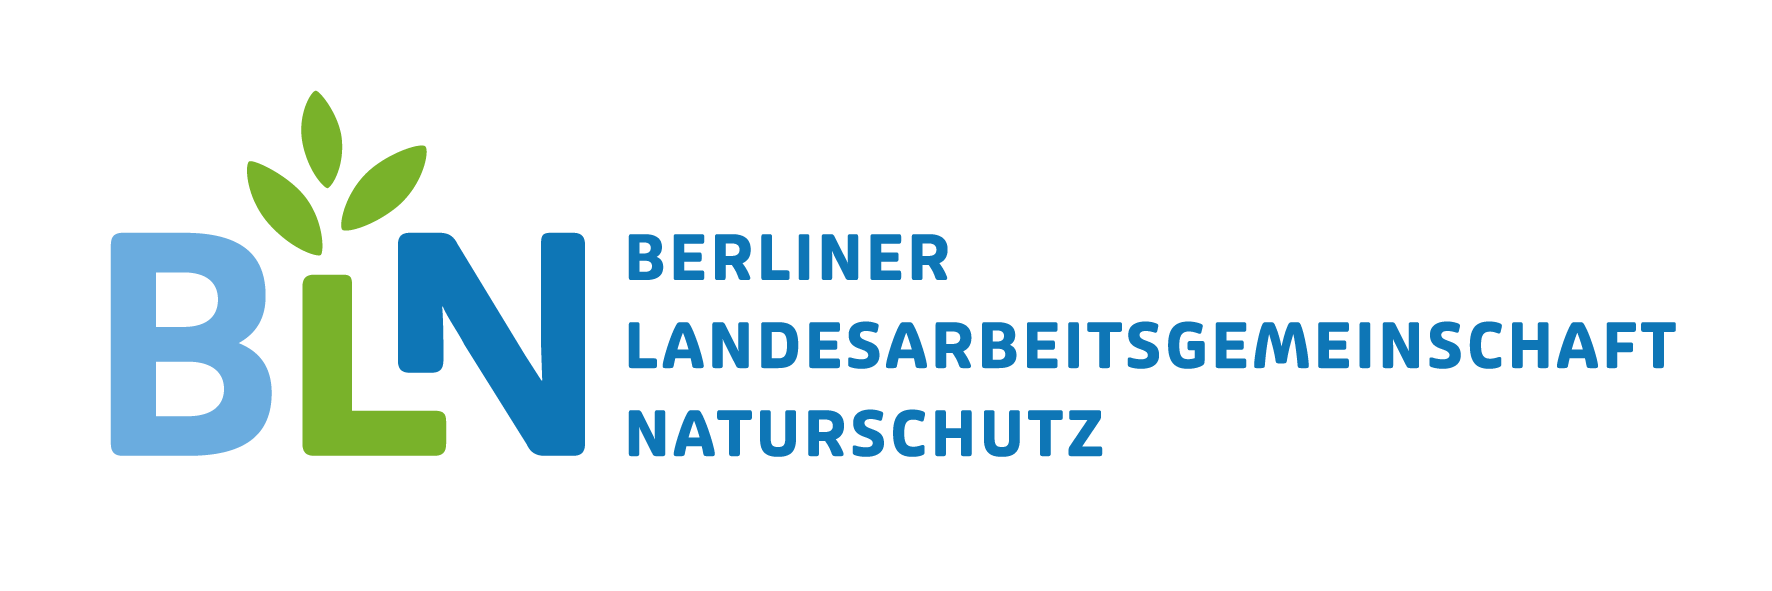 Berliner Landesarbeitsgemeinschaft Naturschutz (BLN) e.V.